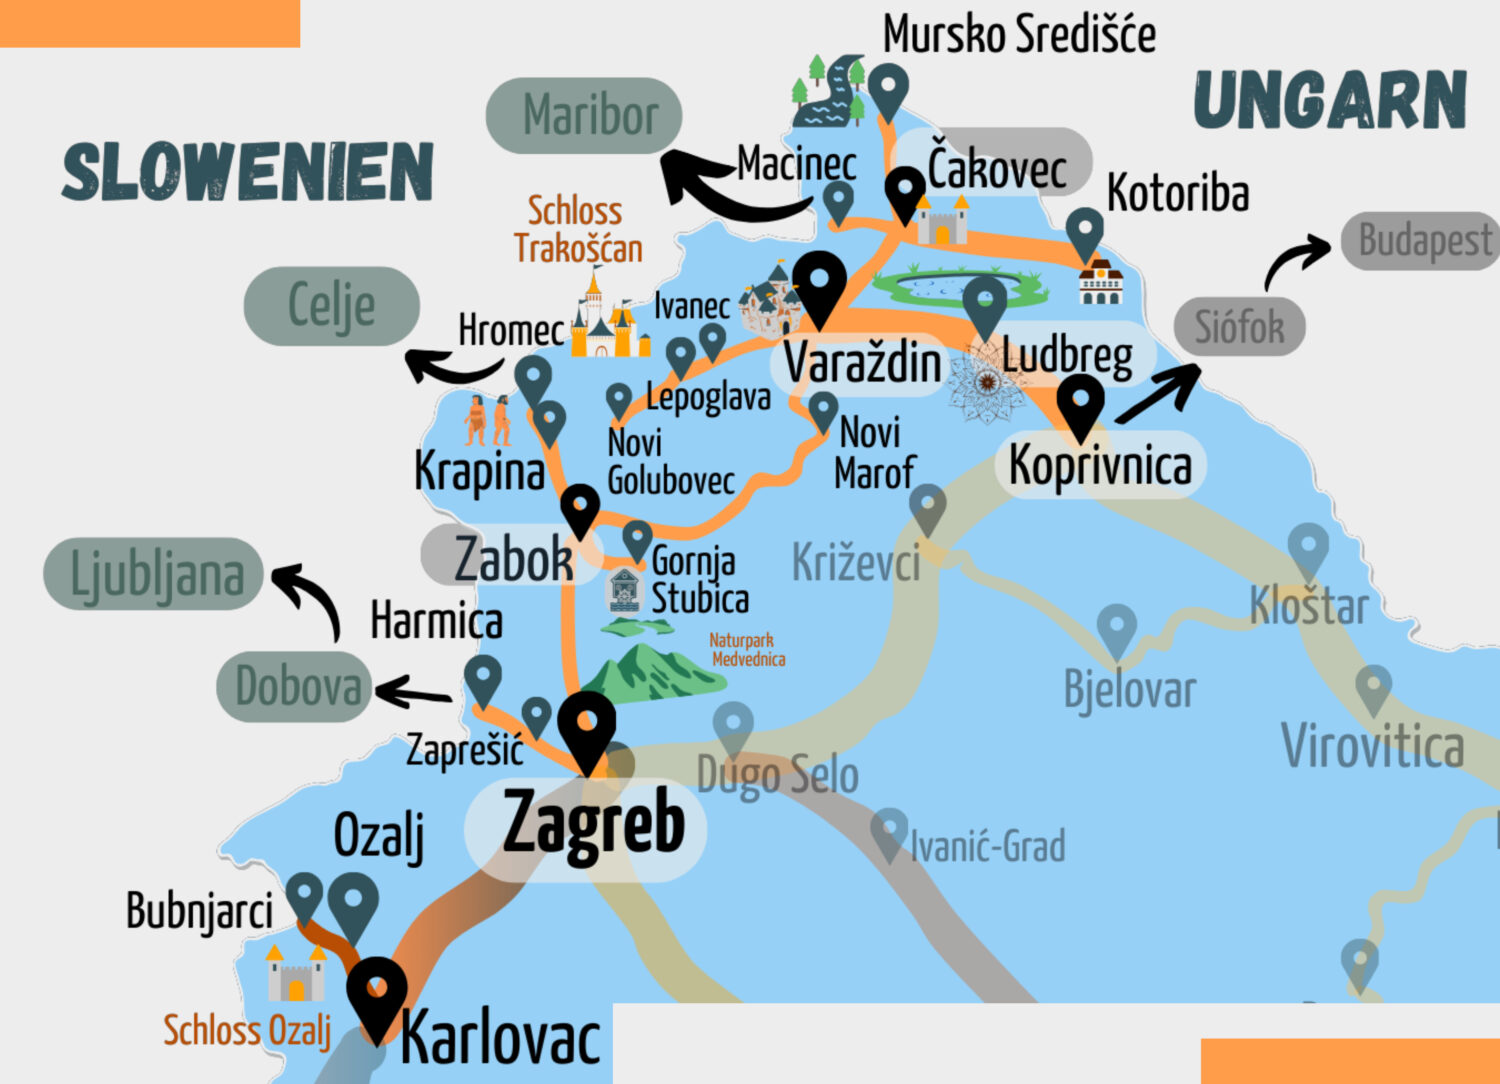 Nebenroute Nordkroatien - Kartenausschnitt des Eisenbahnnetzes in den Gespannschaften nördlich von Zagreb, Krapina-Zagorje, Varazdin, Medimurje, Koprivnica. Die Zugstrecken und Sehenswürdigkeiten sind hervorgehoben.